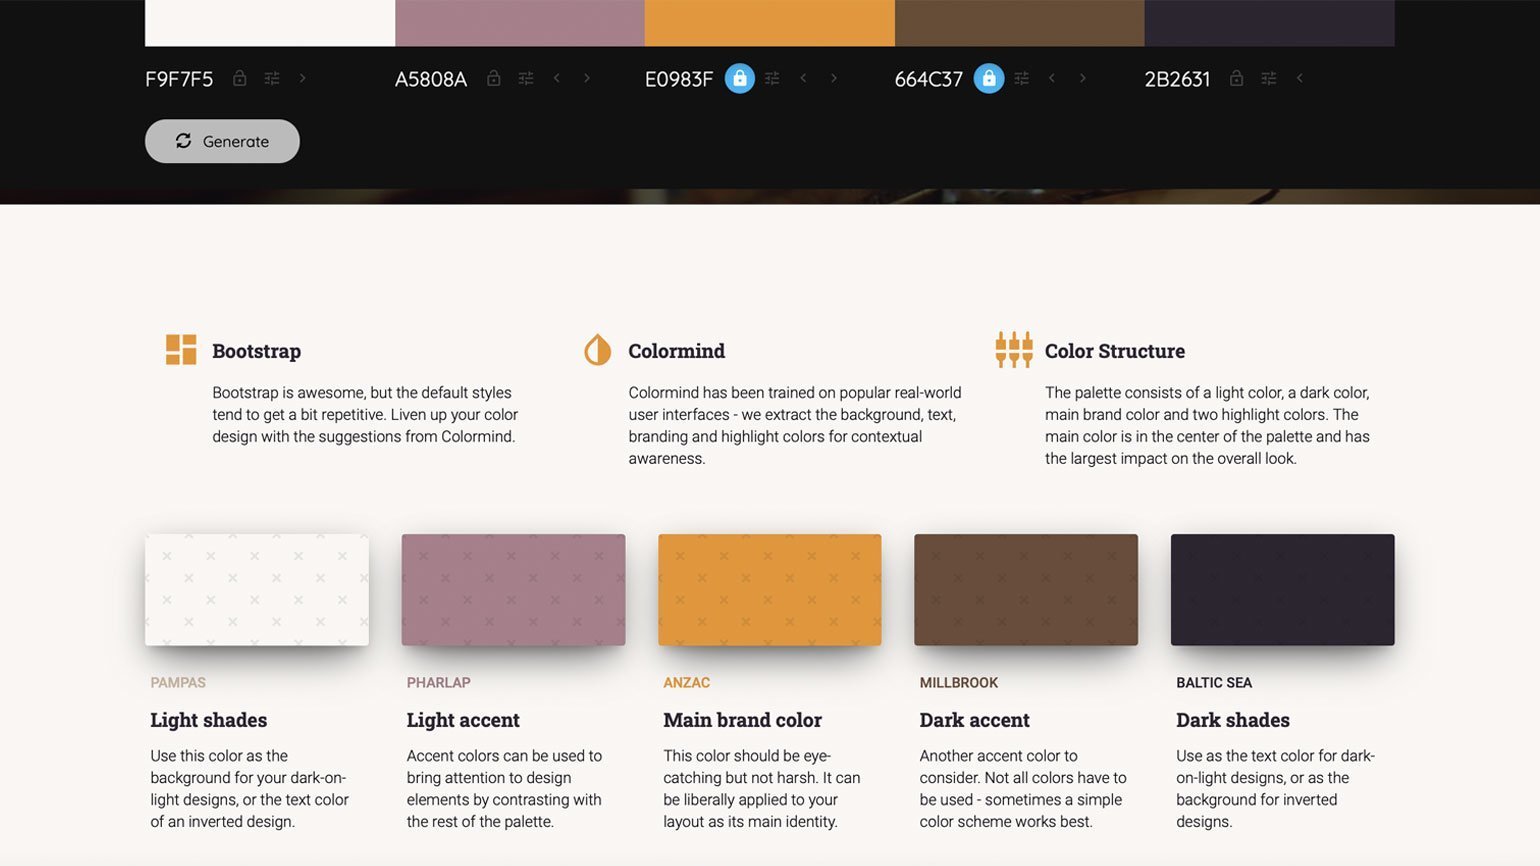 цветовая схема для приложения с белым фоном, тёмно-розовыми акцентами, оранжевым цветом бренда, коричневыми акцентами и тёмно-синими элементами